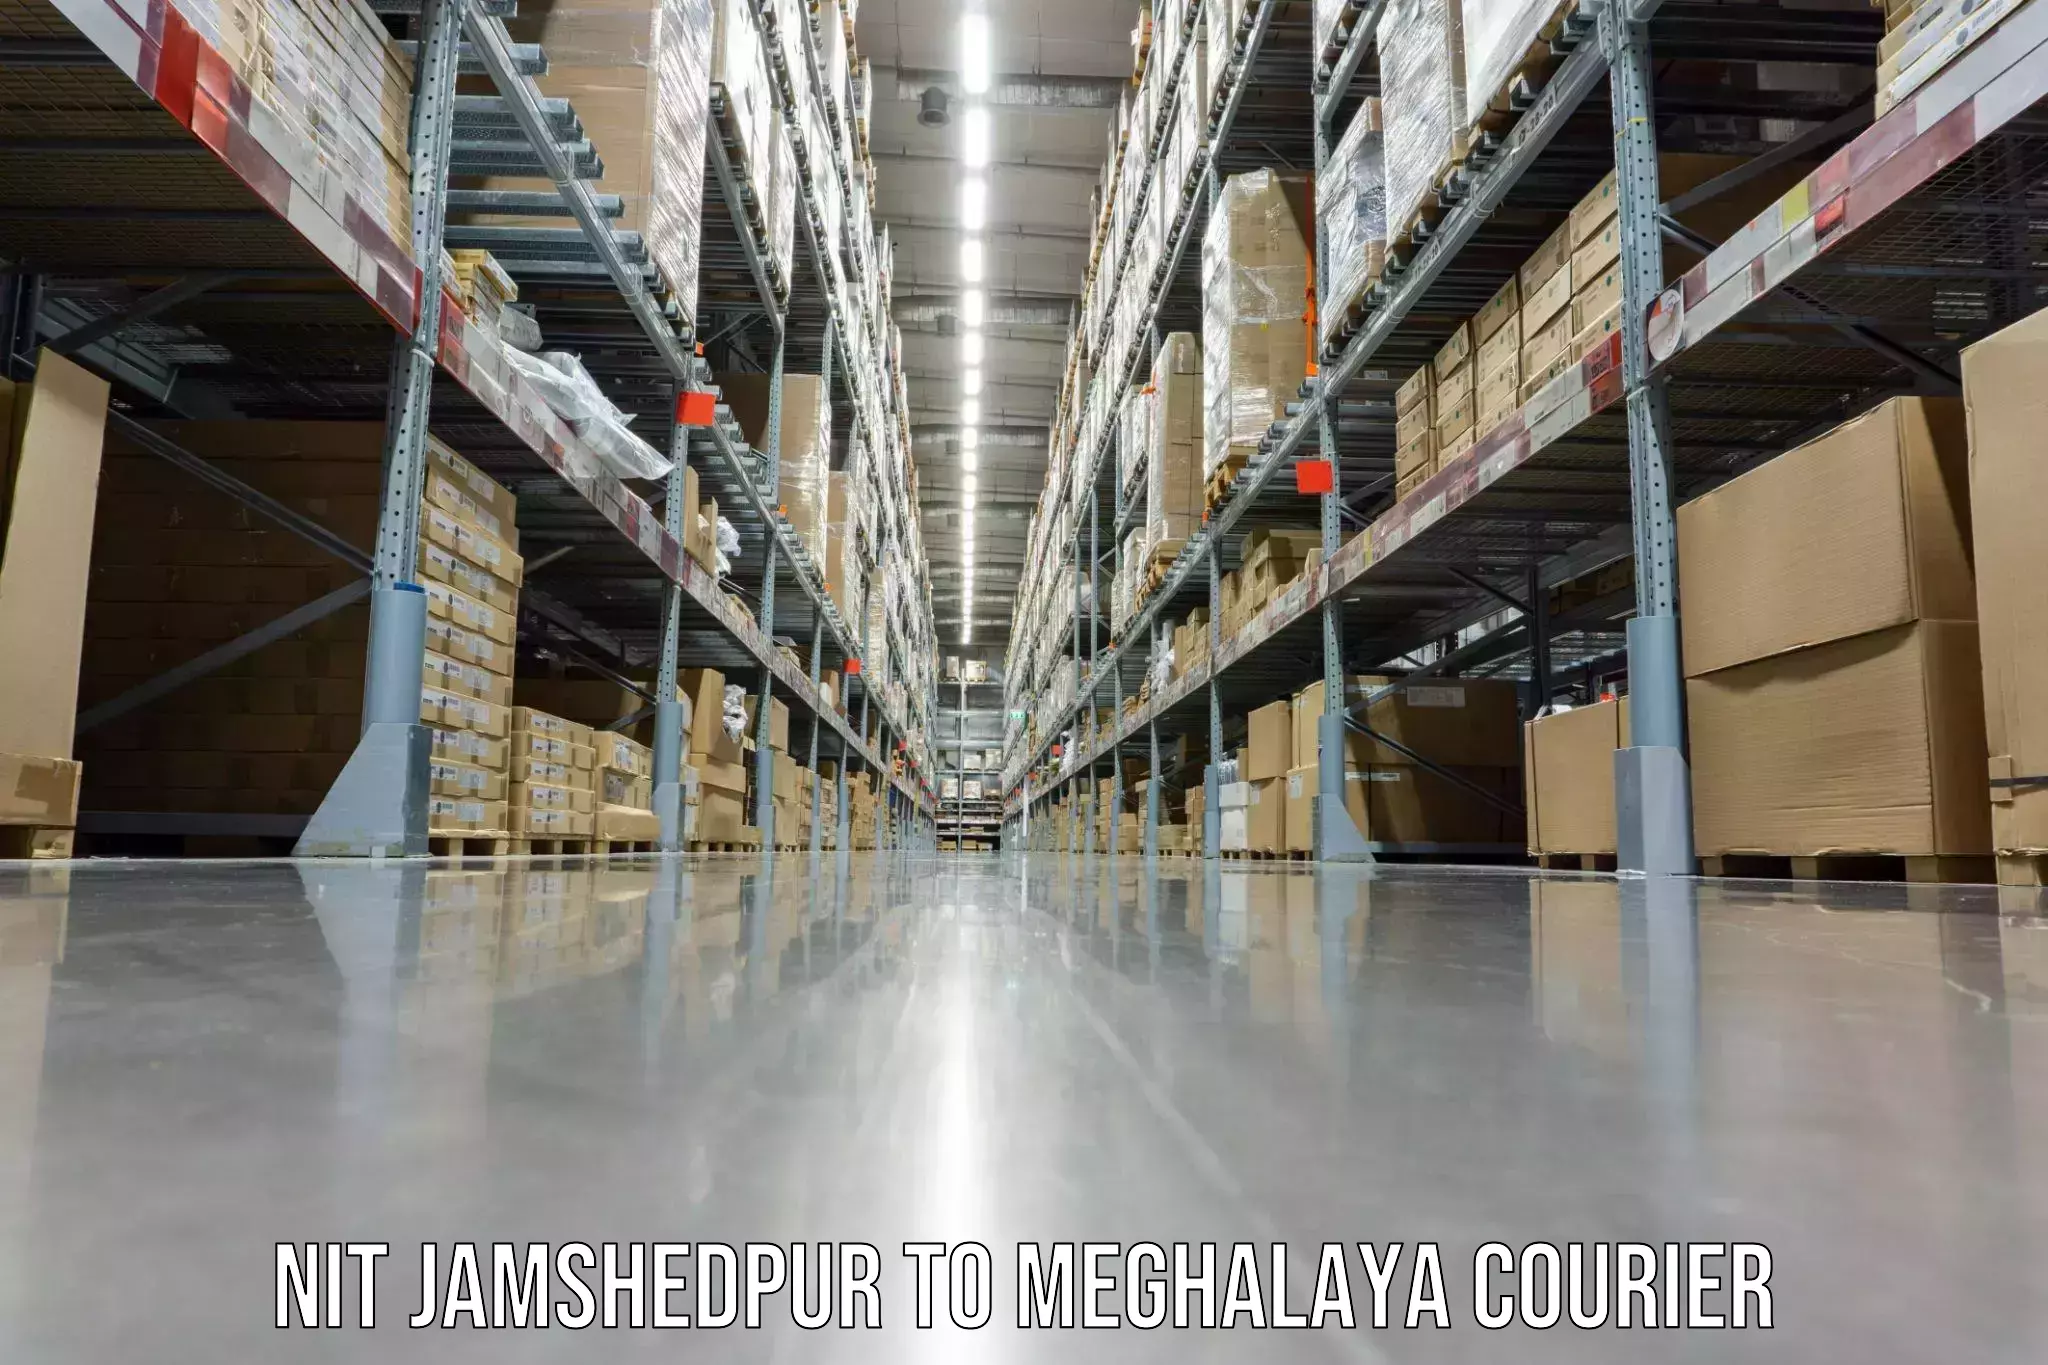 Furniture moving experts NIT Jamshedpur to Meghalaya